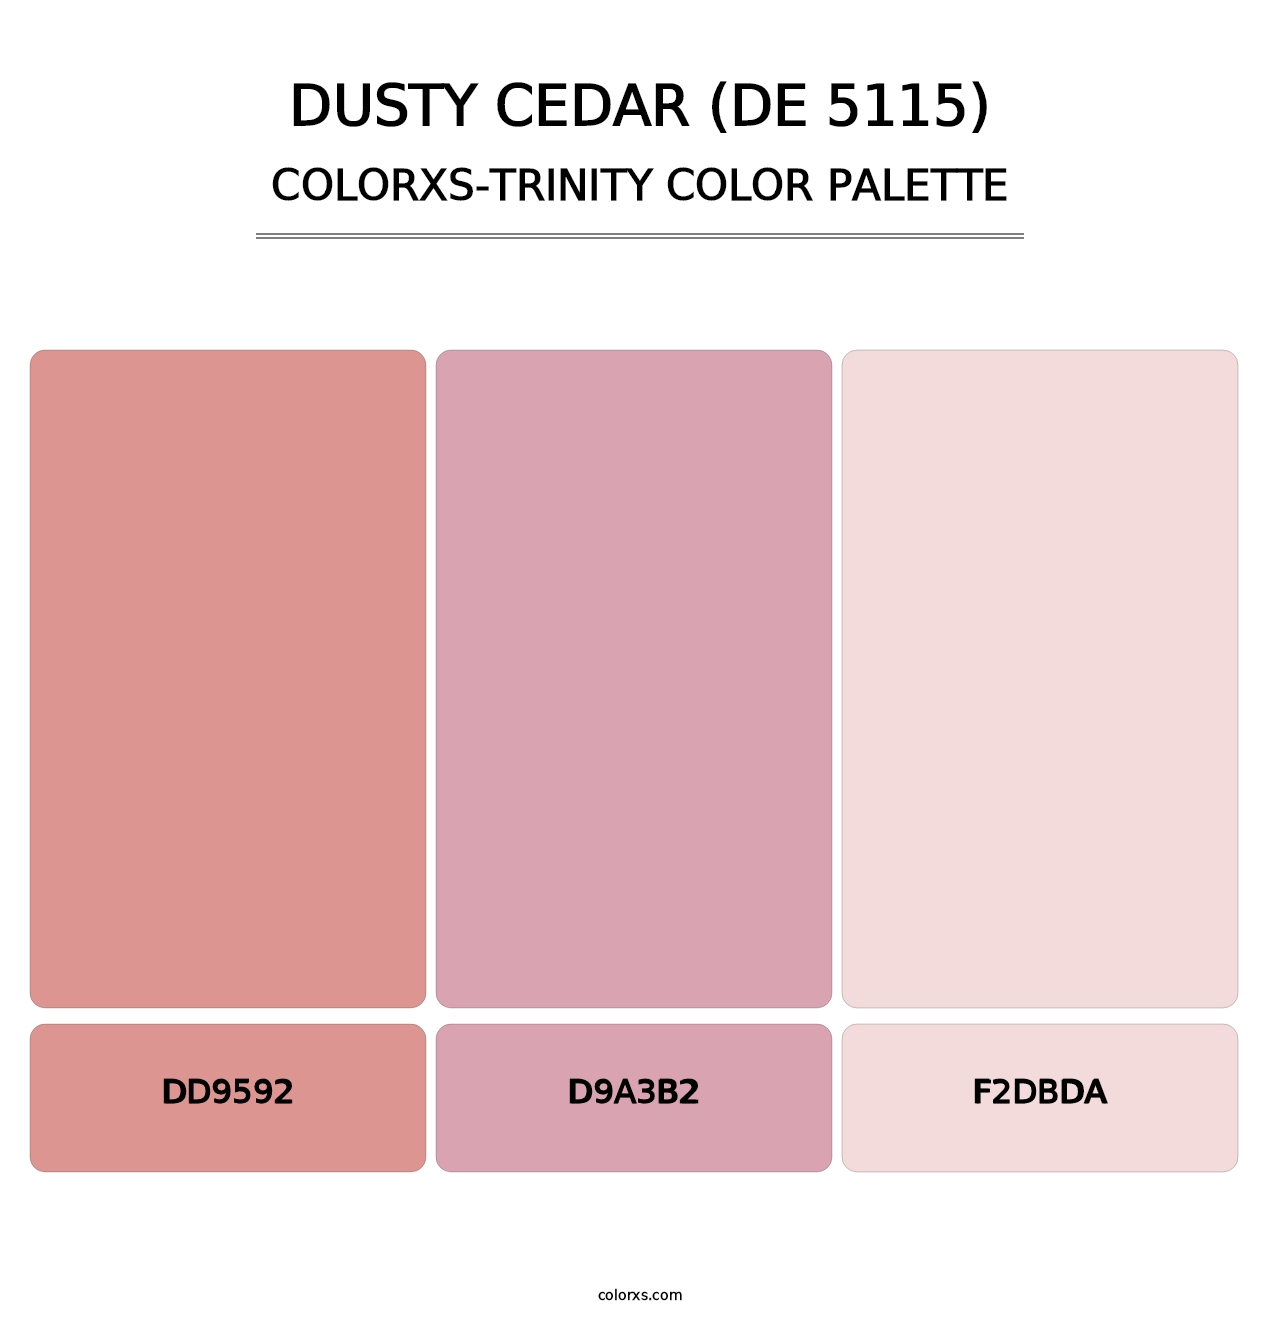 Dusty Cedar (DE 5115) - Colorxs Trinity Palette